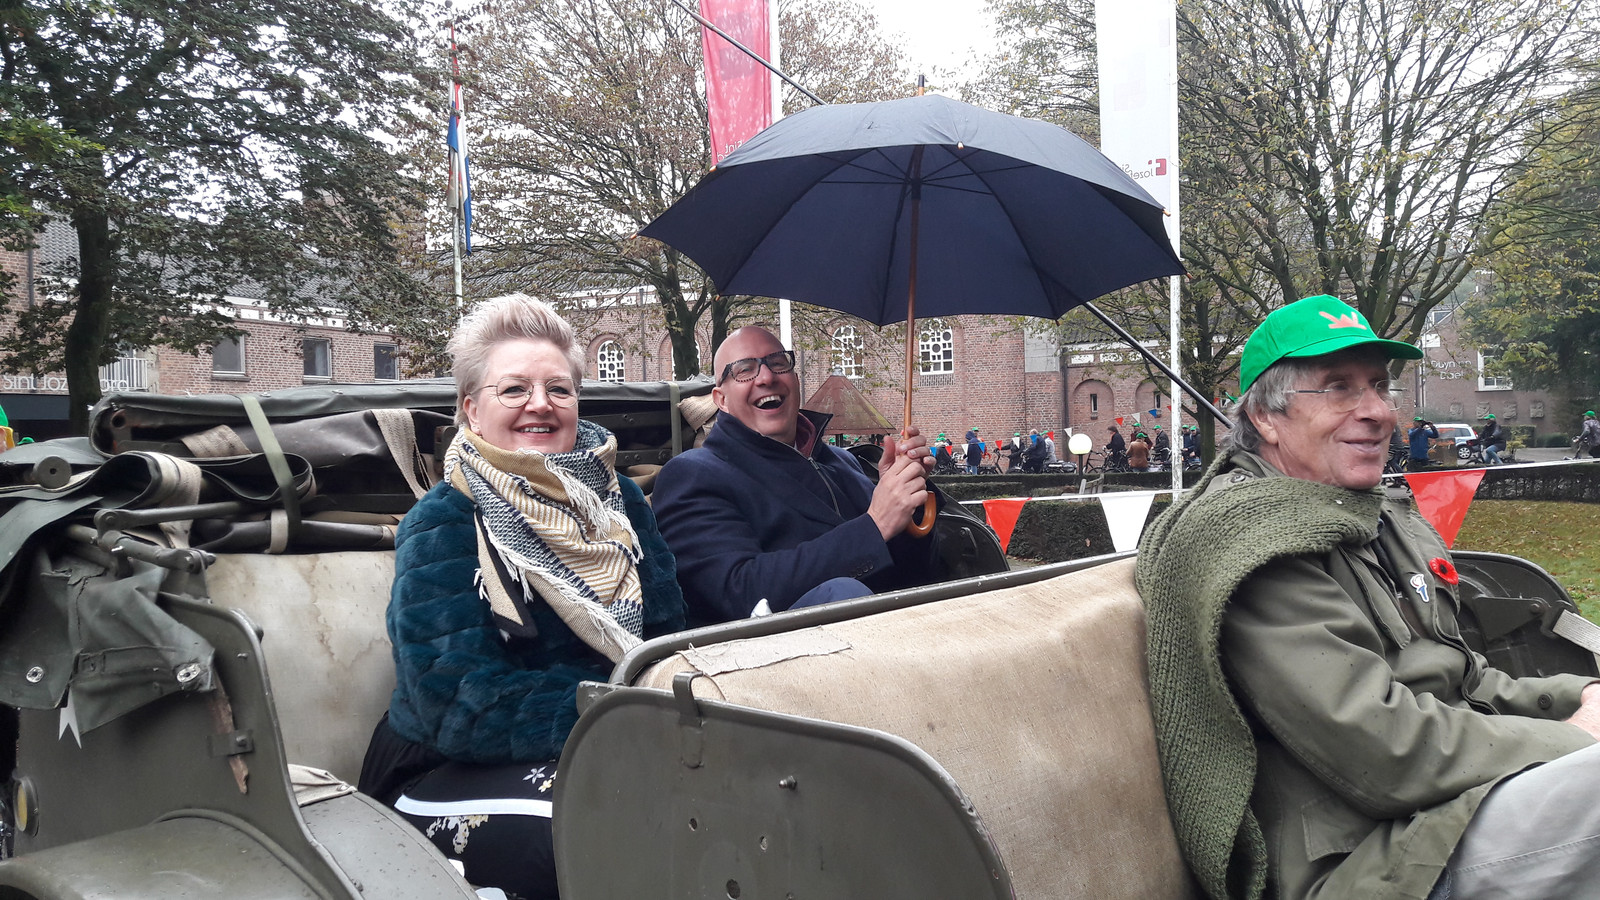 Burgemeester Jack Mikkers van Den Bosch en zijn vrouw in een historische jeep in Nuland, tijdens de bevrijdingstocht van Vinkel naar de Parade in Den Bosch.